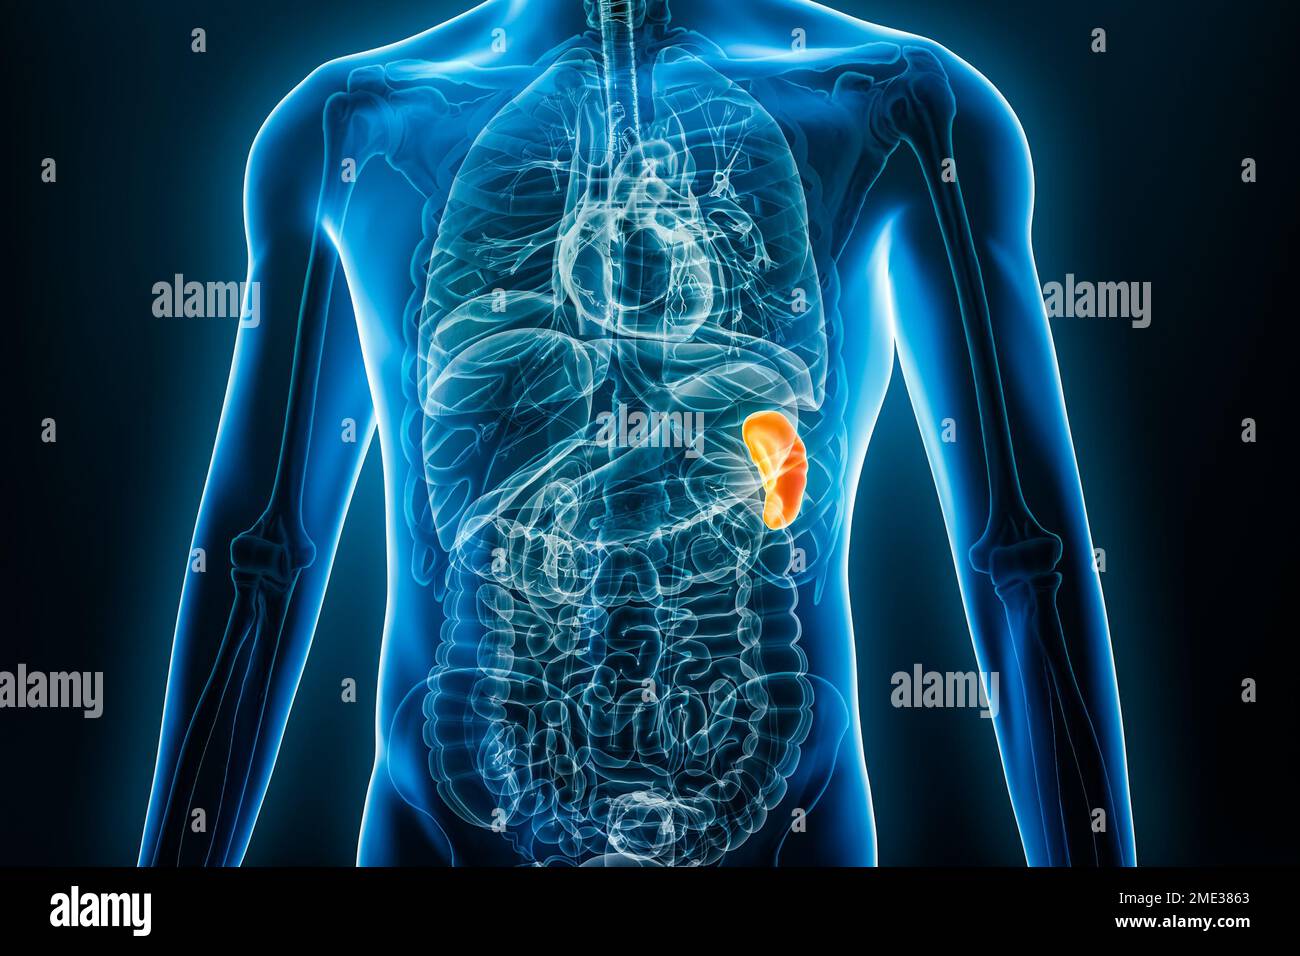 Immagine dell'organo interno della milza radiogena 3D con contorni del corpo maschile. Anatomia umana, medicina, biologia, scienza, concetti sanitari. Foto Stock